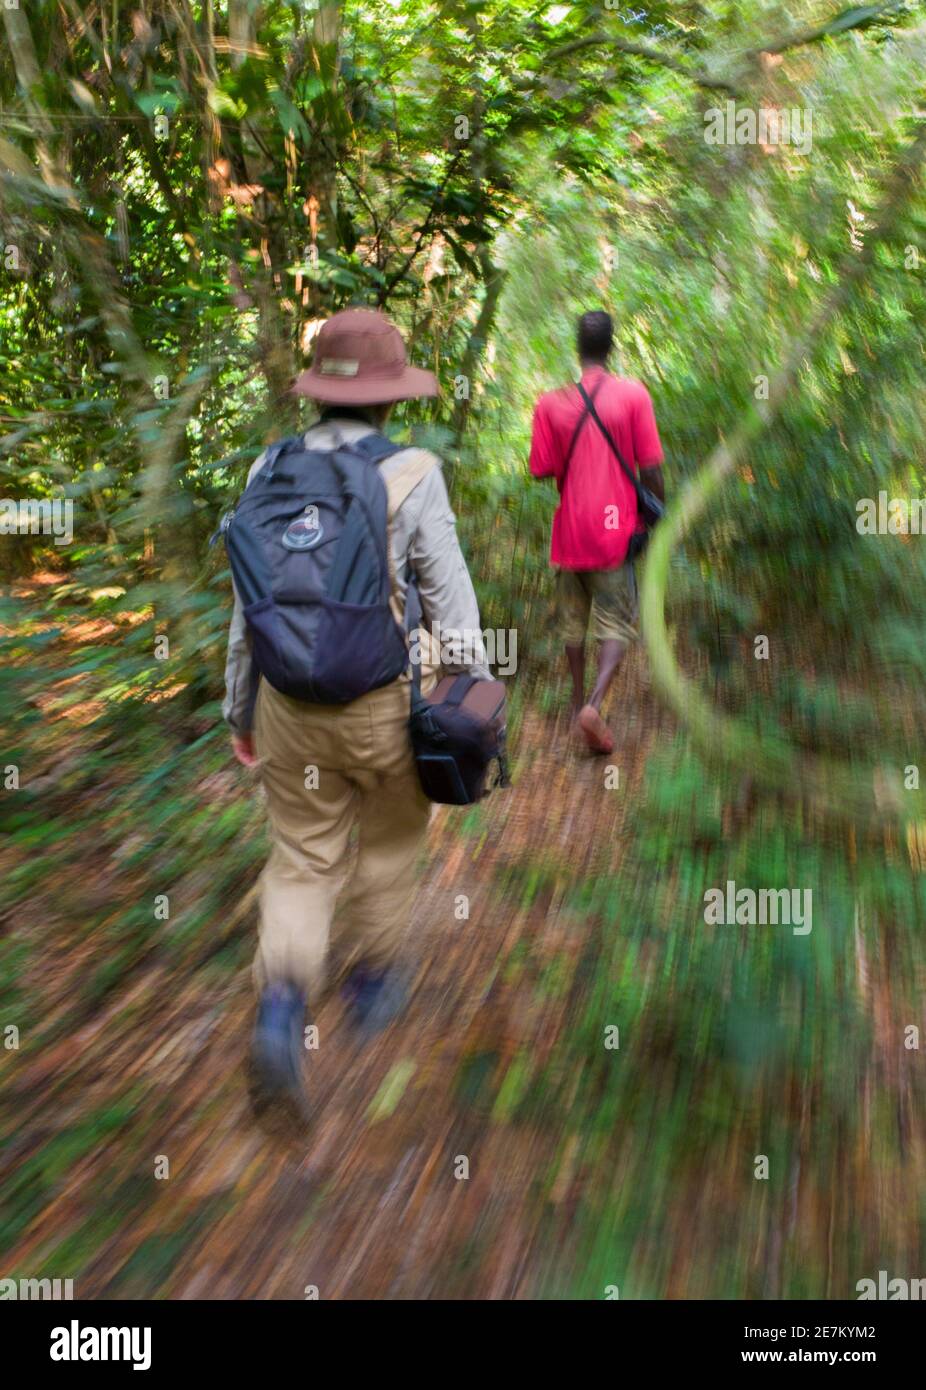 Randonnée éco-touristique le long du sentier dans la forêt tropicale, parc national de Loango, Gabon Banque D'Images